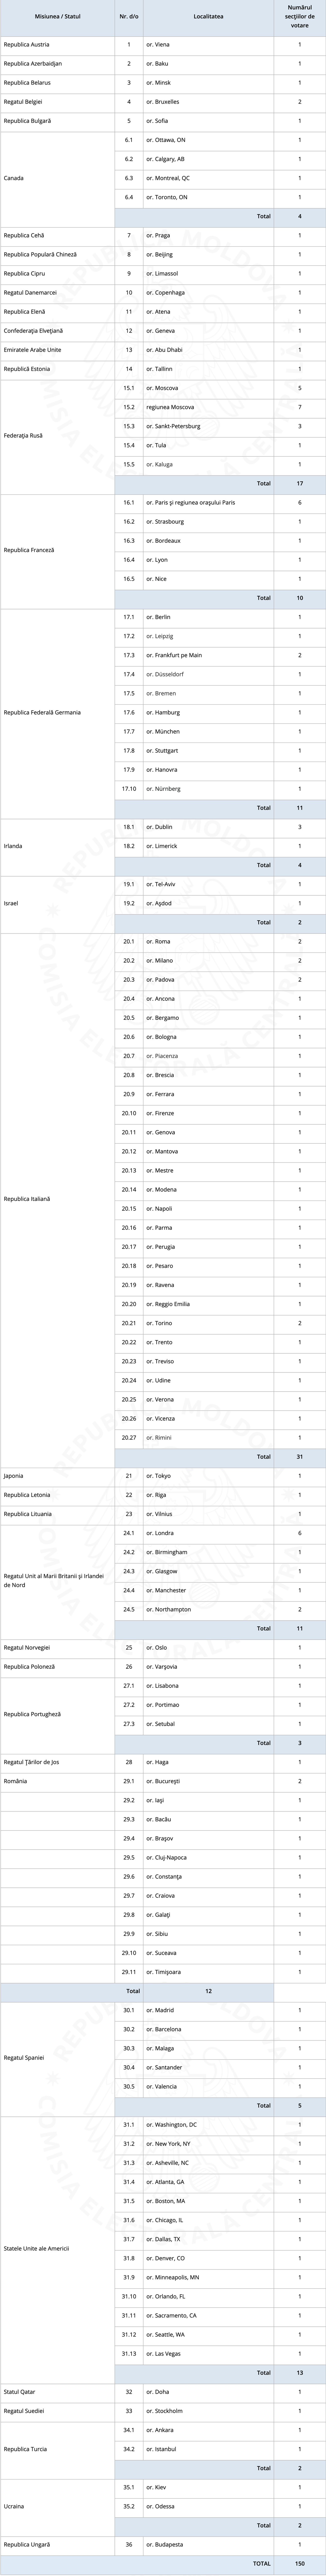 Lista secțiilor de votare în străinătate pentru alegerile parlamentare anticipate din 11 iulie 2021 - Sputnik Moldova, 1920, 20.07.2021